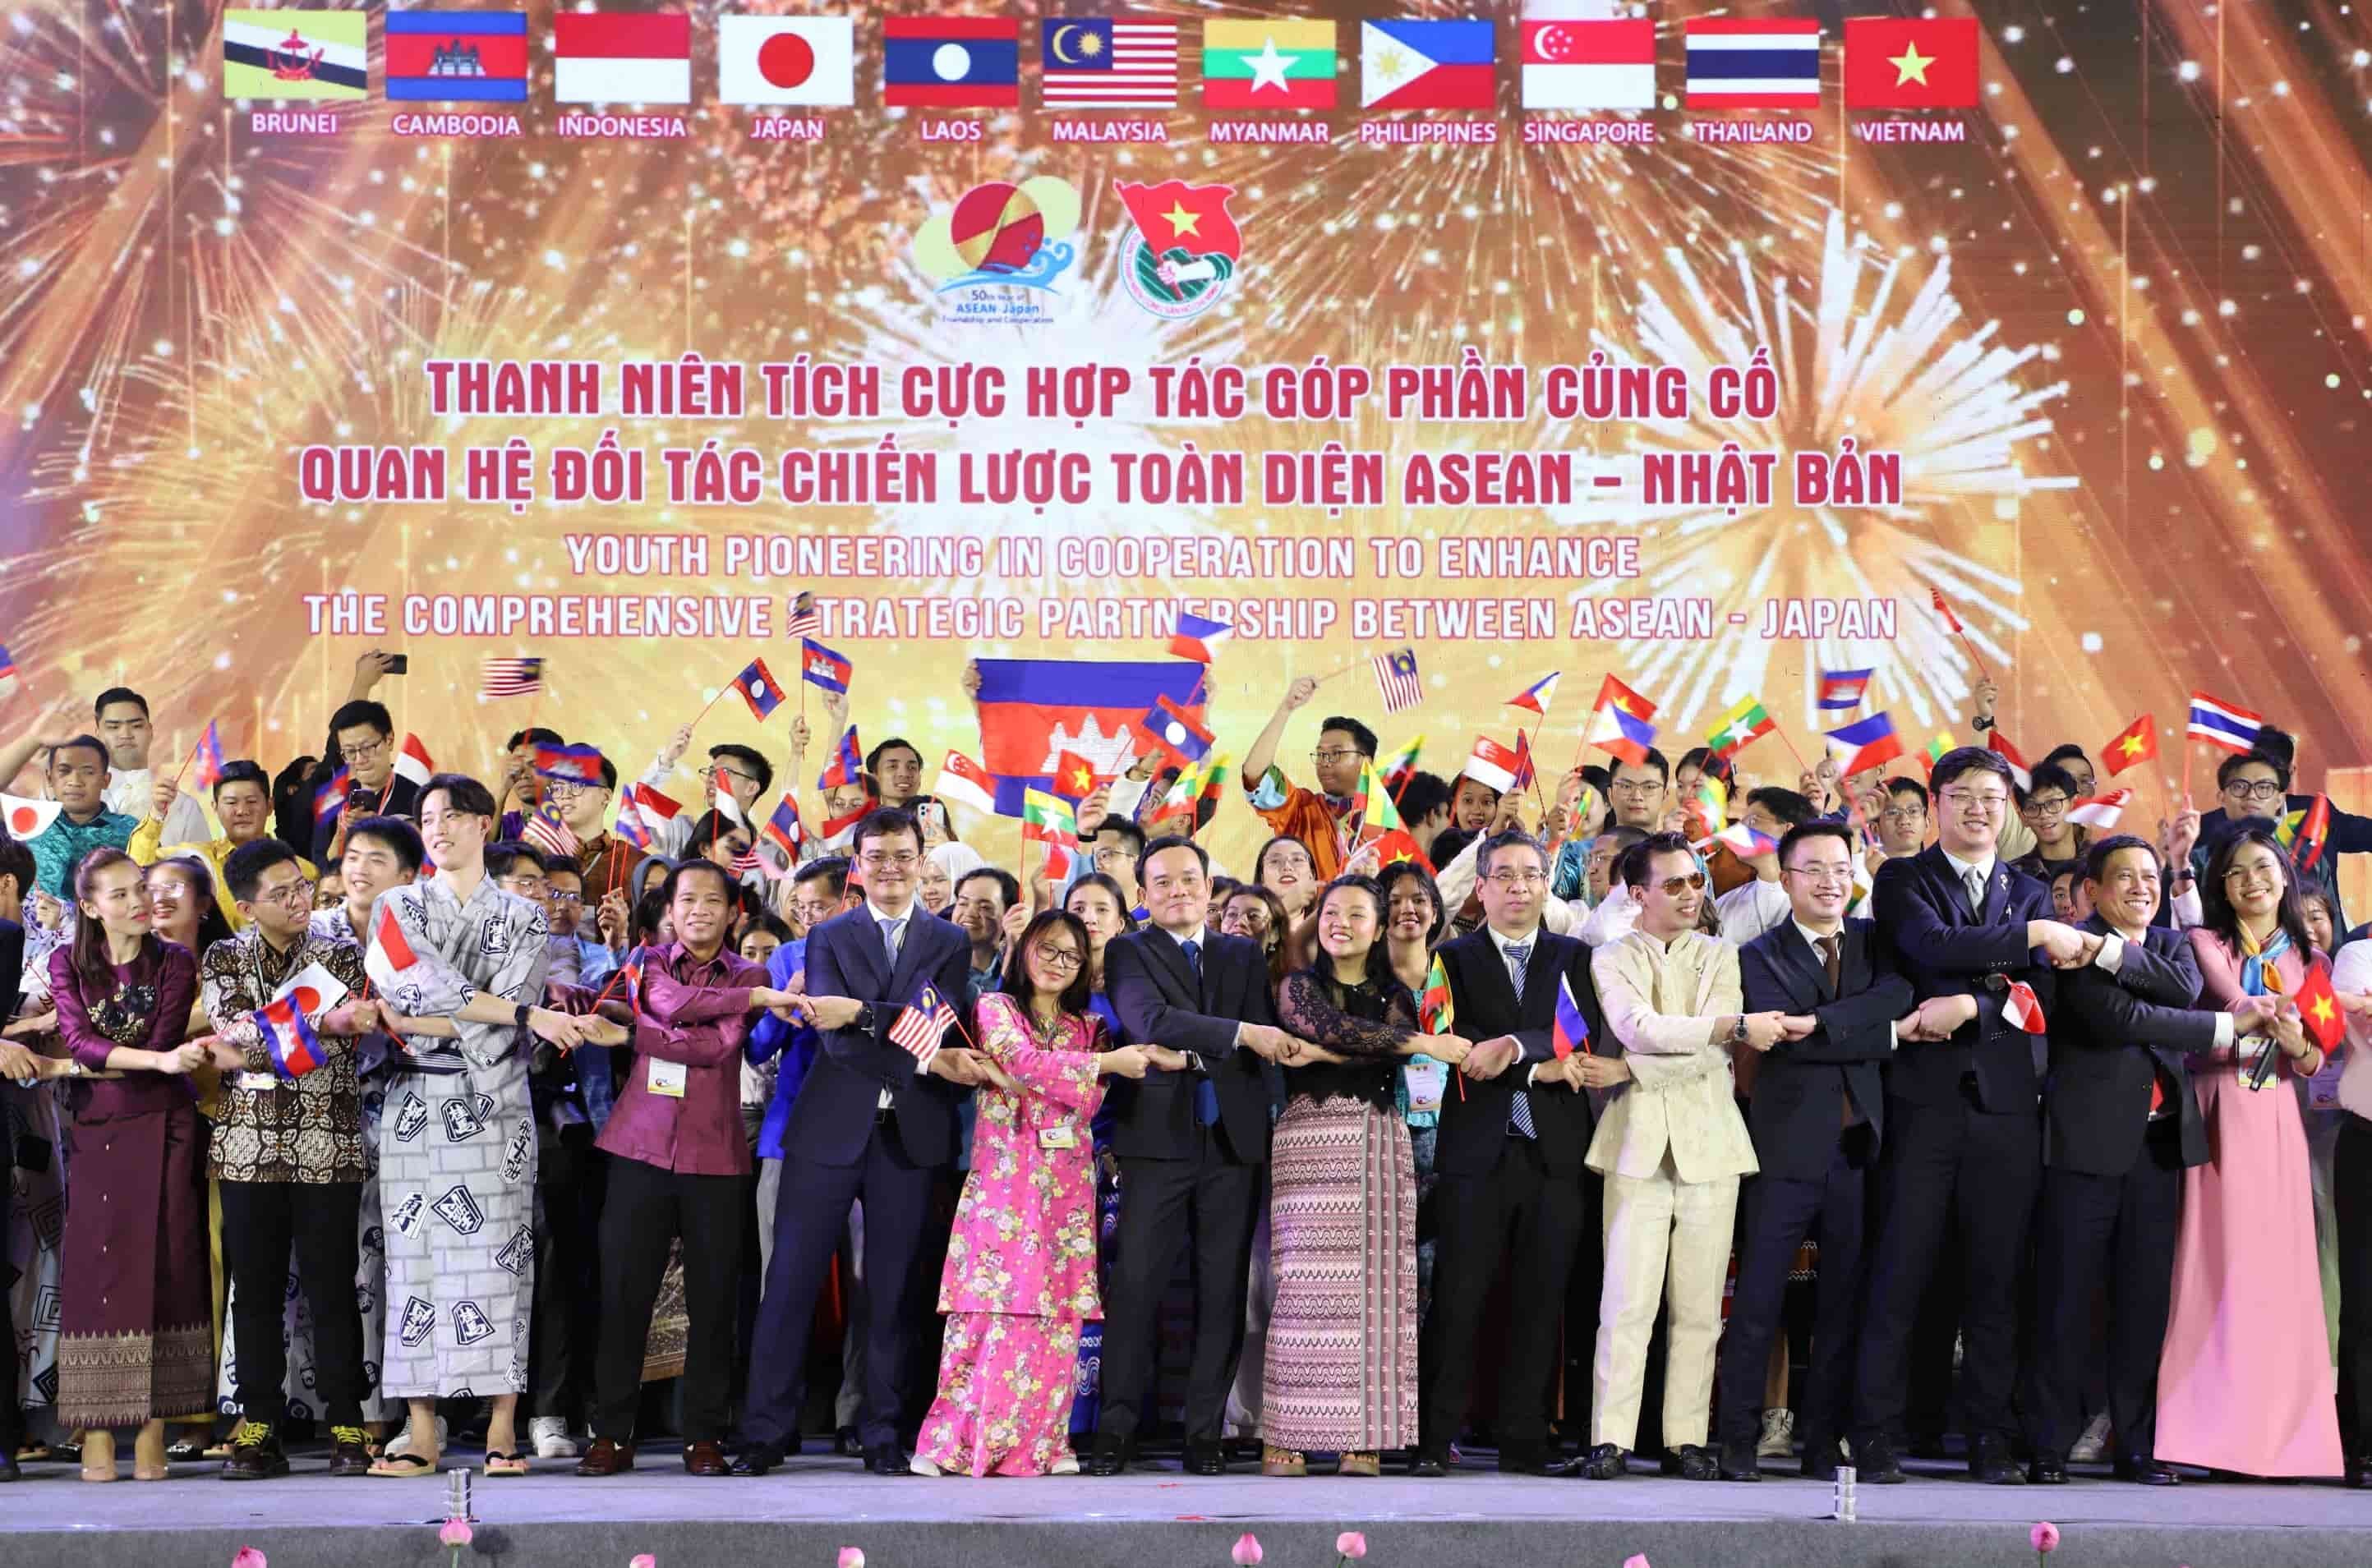 Chương trình nghệ thuật đặc sắc chào mừng 50 năm ASEAN - Nhật Bản